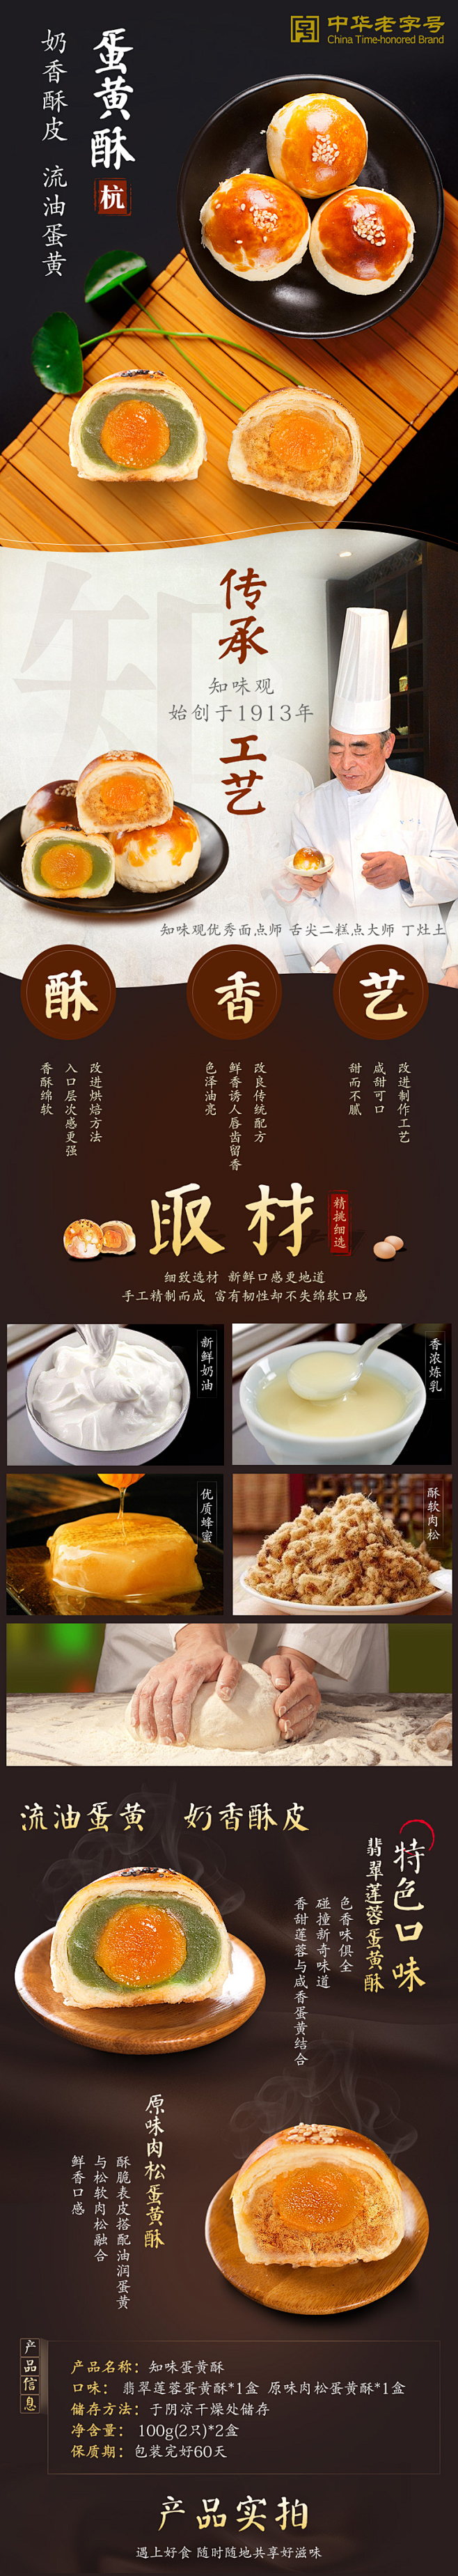 知味观蛋黄酥2口味2盒 手工台湾风味甜食...